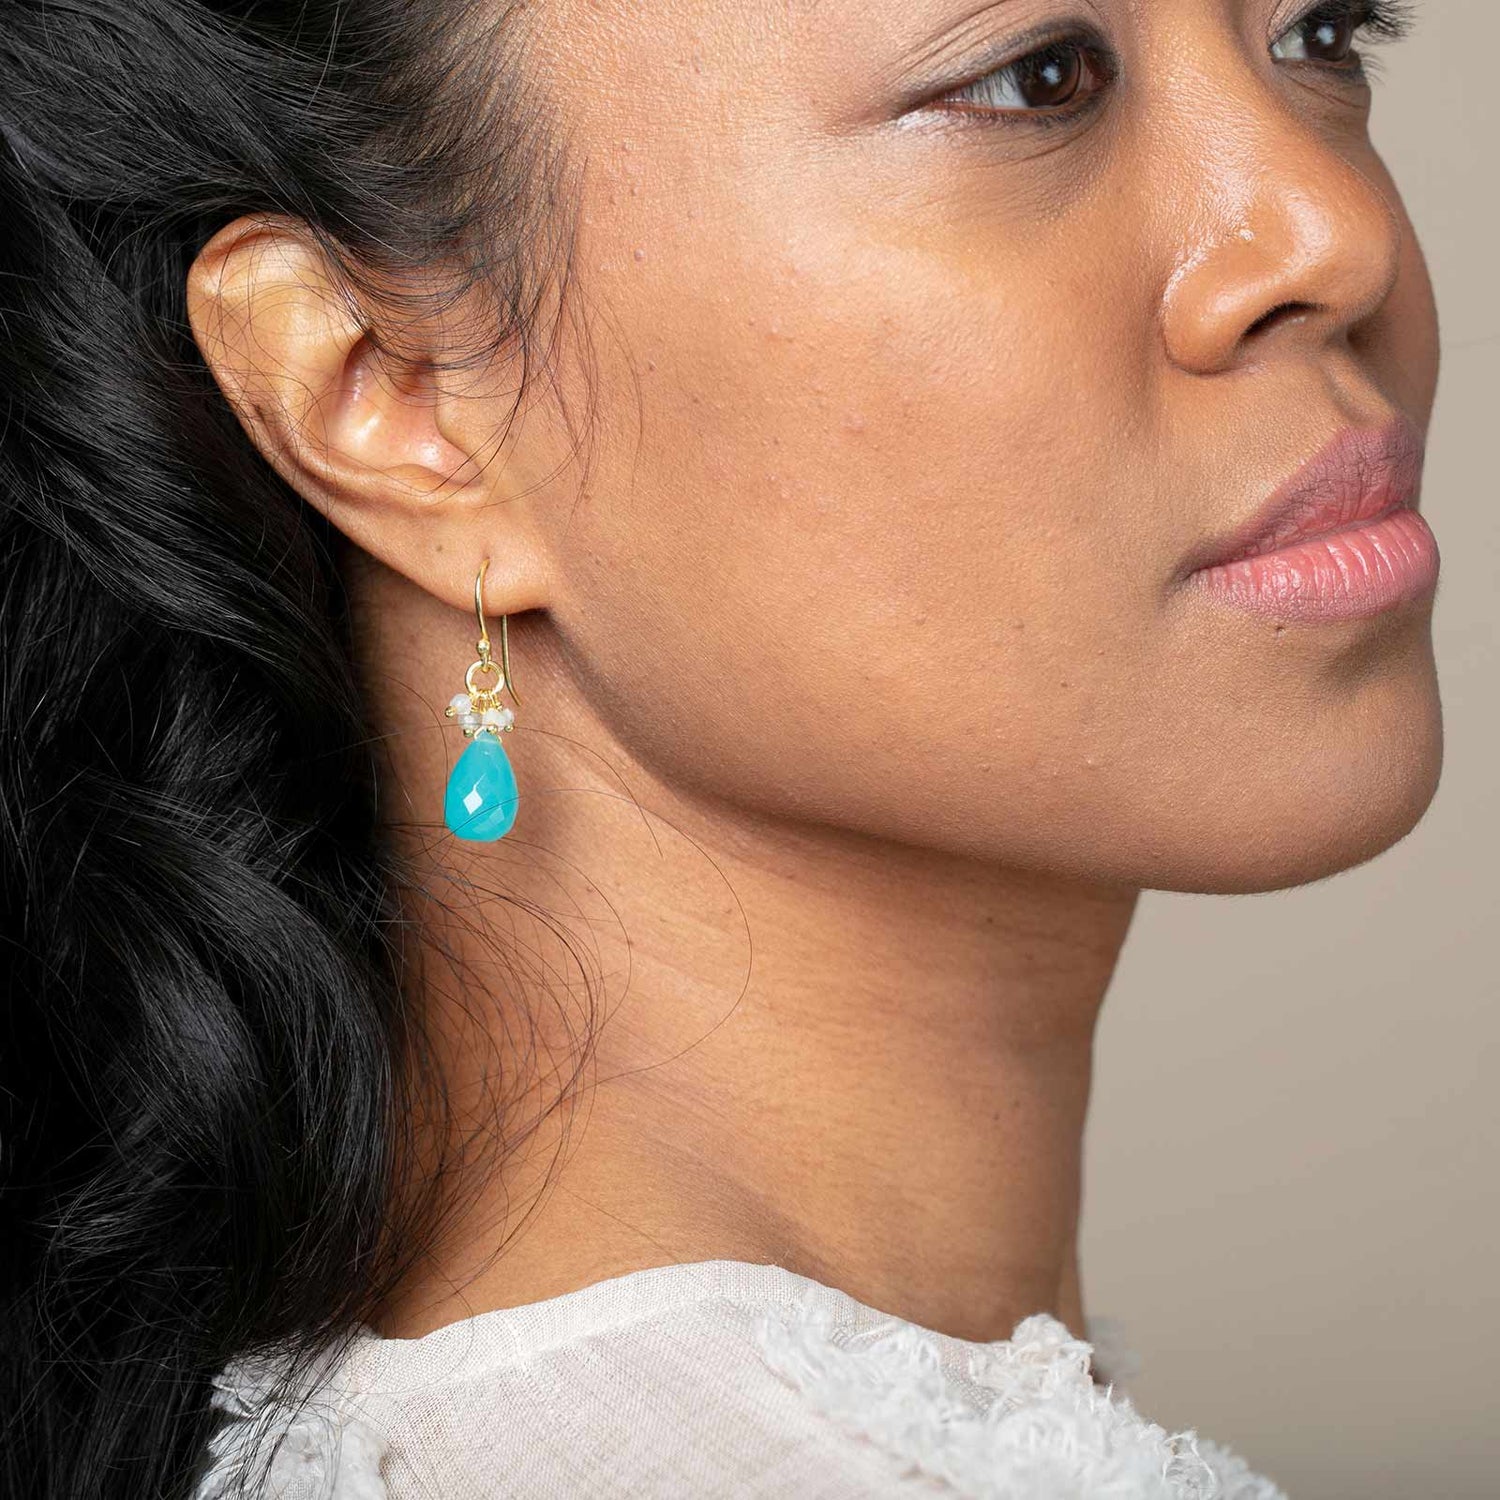 DIY Earring Packaging Inspired by Briolette Jewelry  Diy earrings packaging,  Diy jewelry display, Jewelry packaging